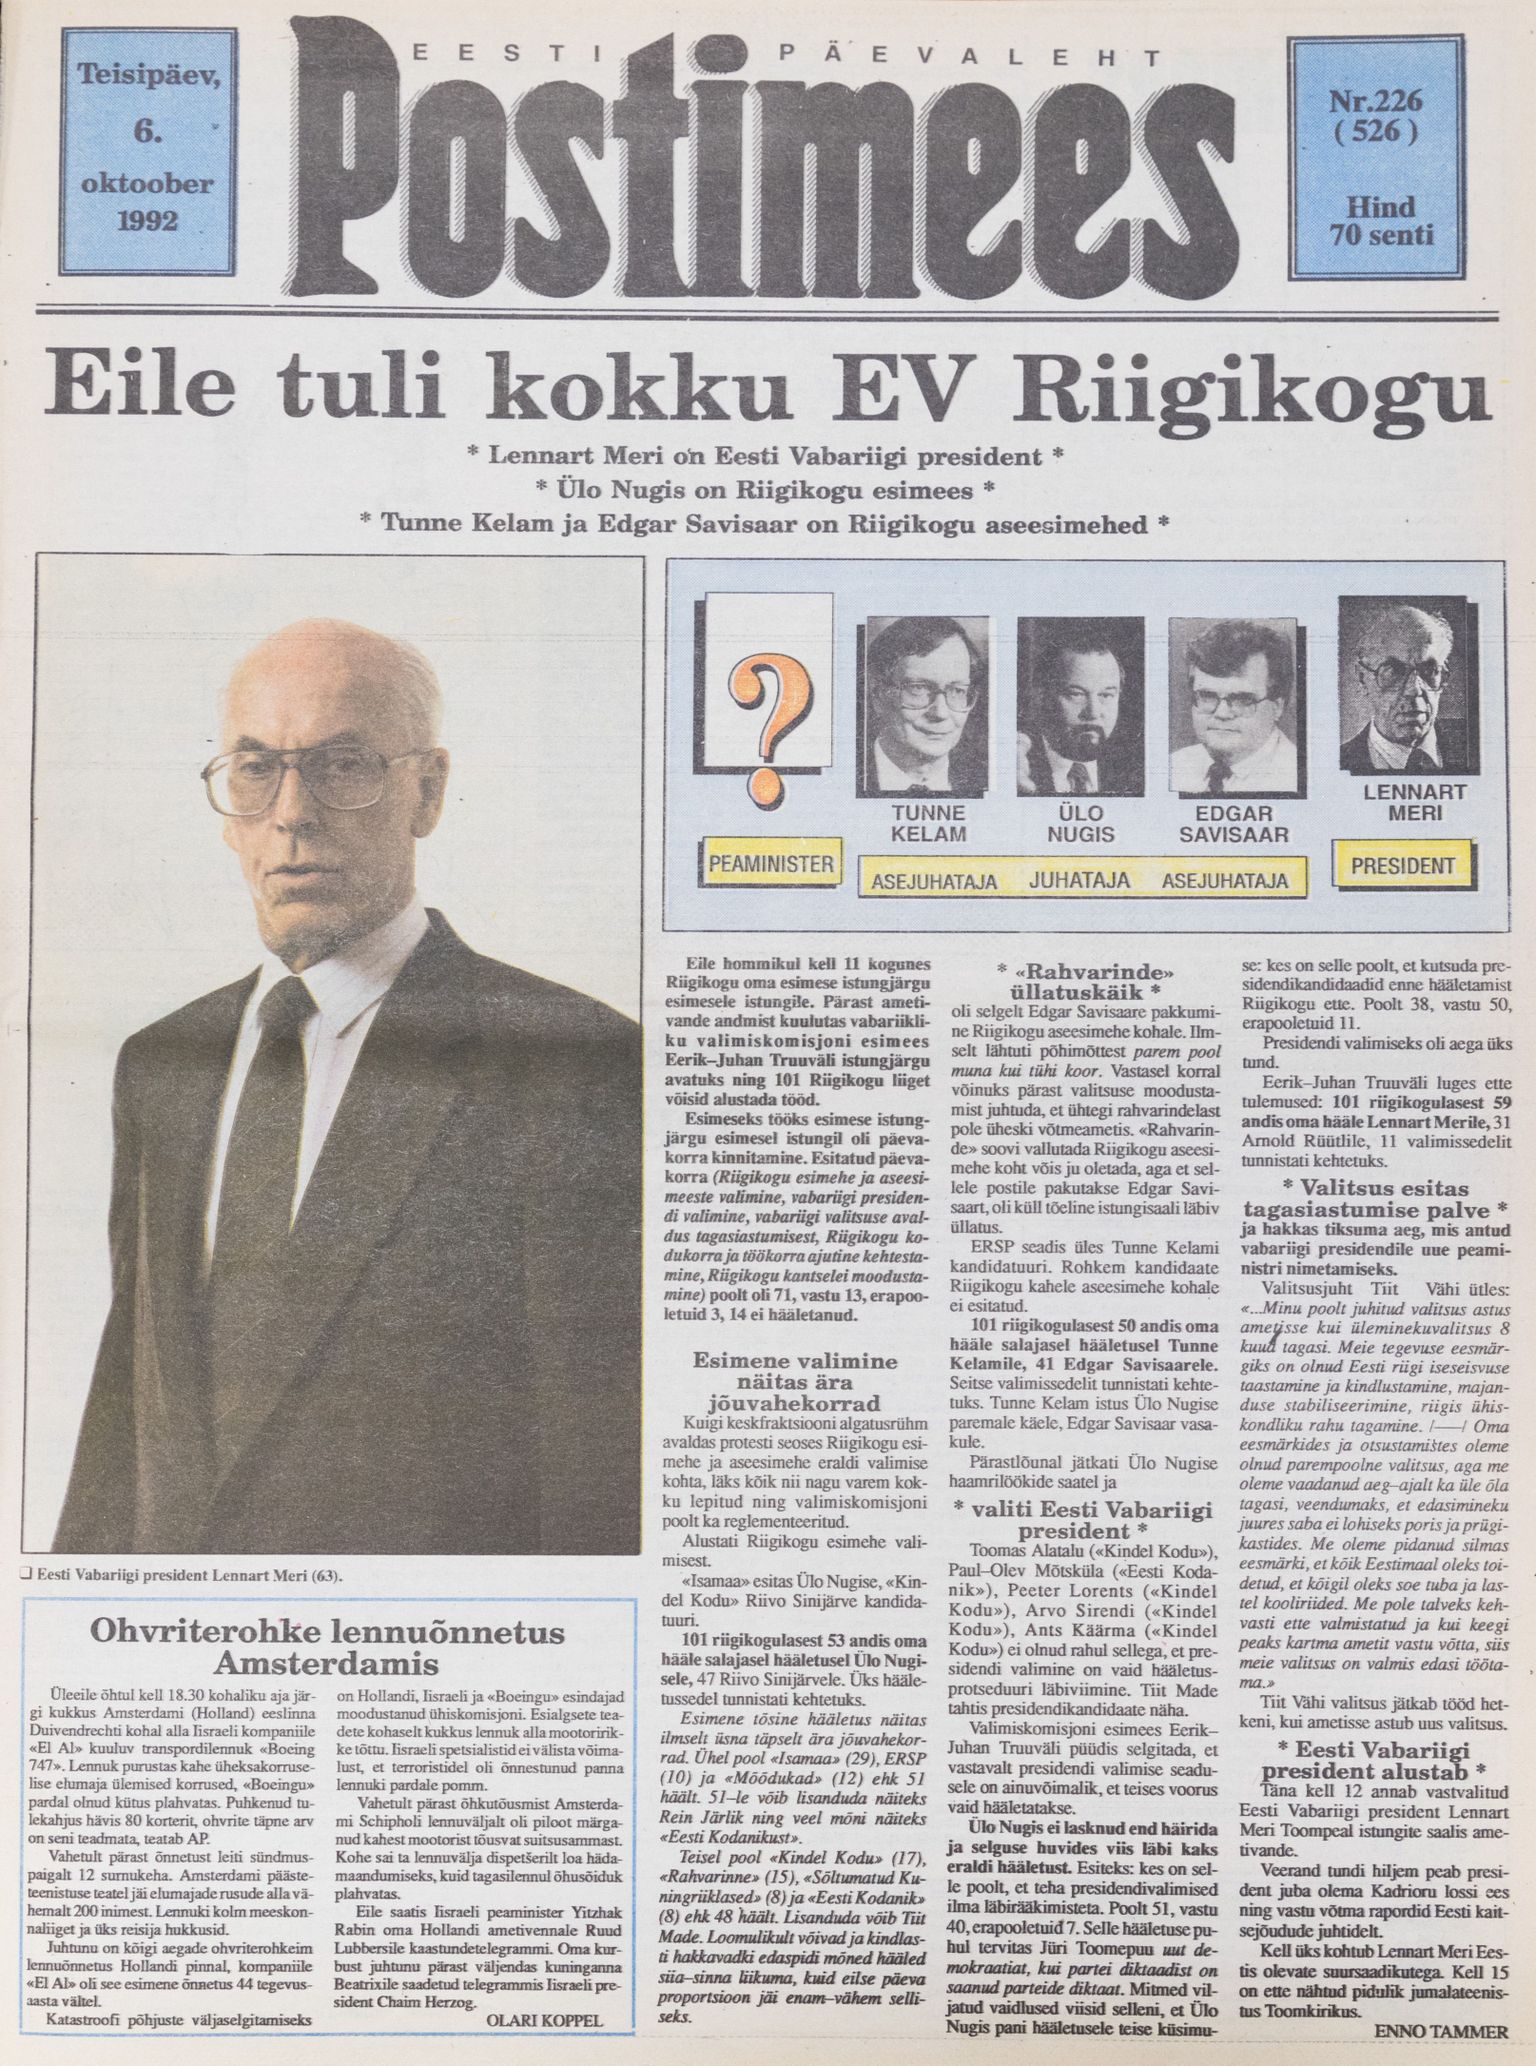 Eesti iseseisvuse taastamise järel on seni valitud viis korda presidenti, iga kord on valituks osutunu olnud Postimehe esikaanel.